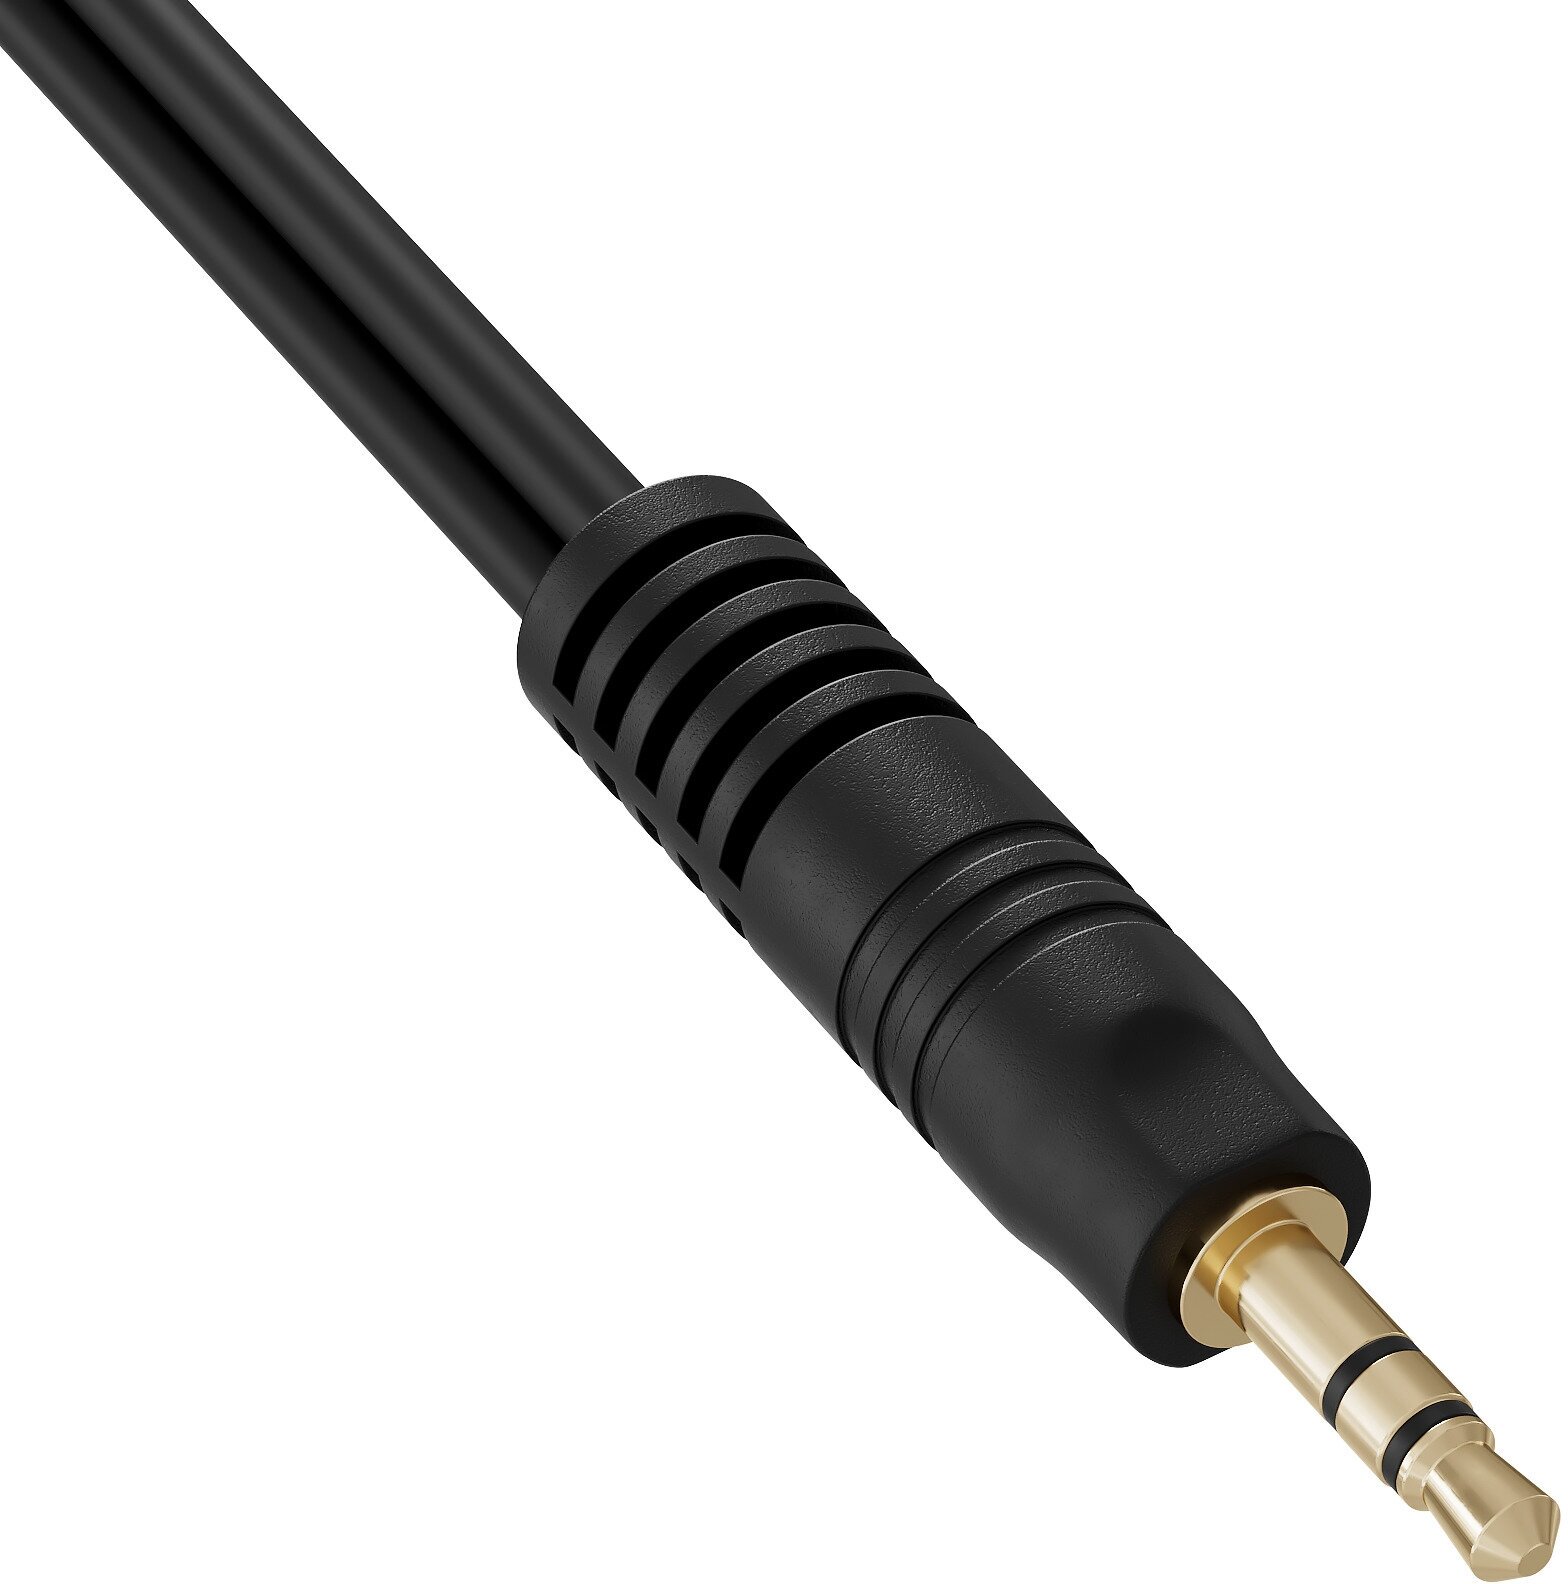 Аудио сплиттер переходник GSMIN Claim Gold разветвитель для трех наушников Mini Jack 35 джек (25см) (Черный)